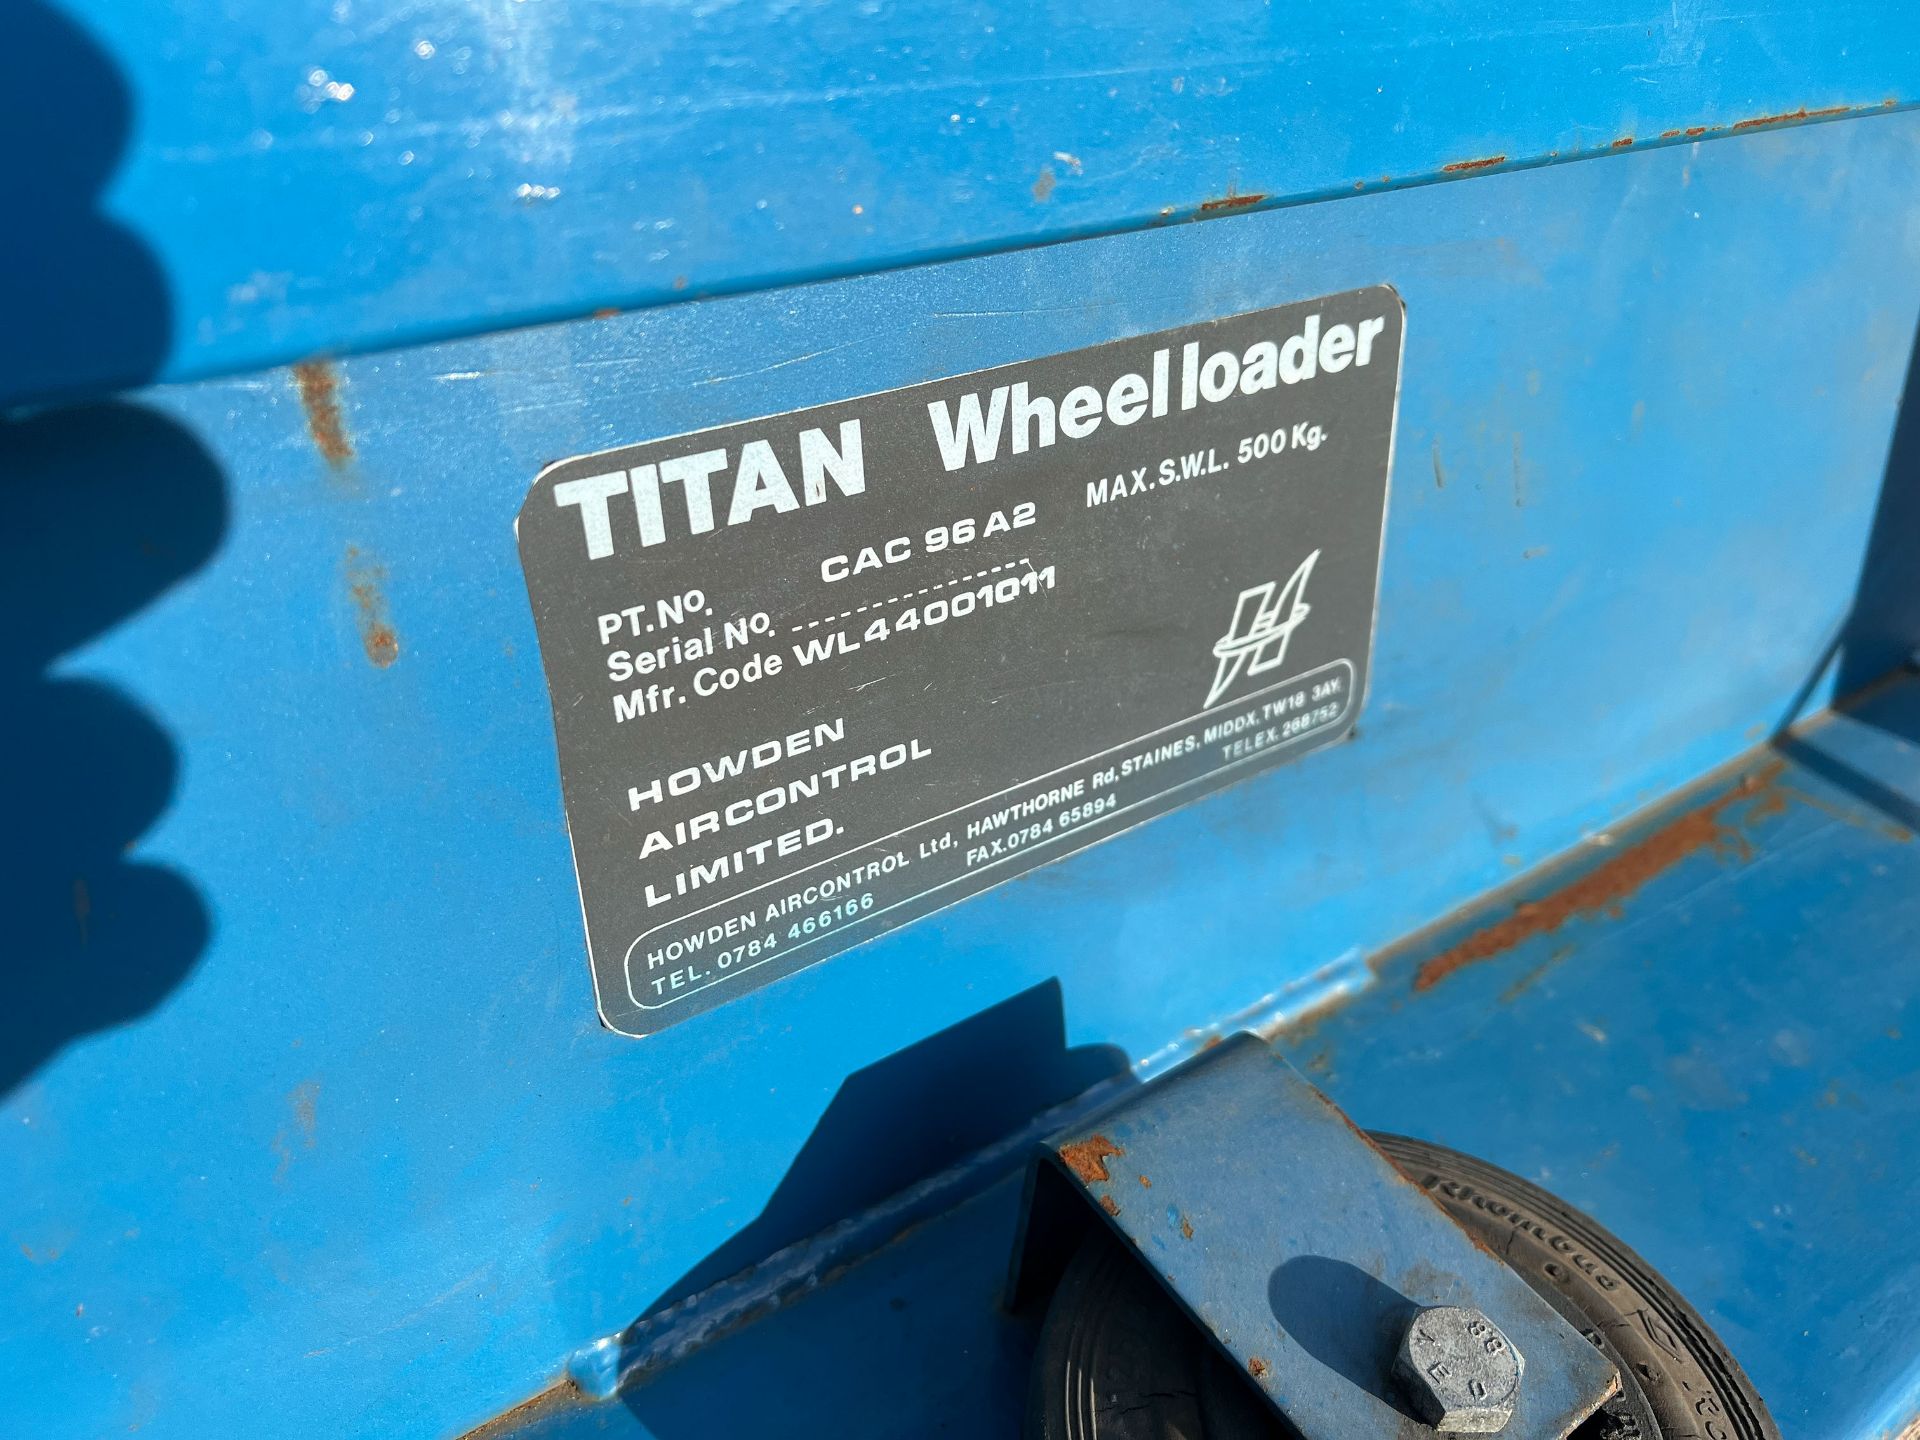 Titan Wheelloader SWL 500kg - Image 4 of 5